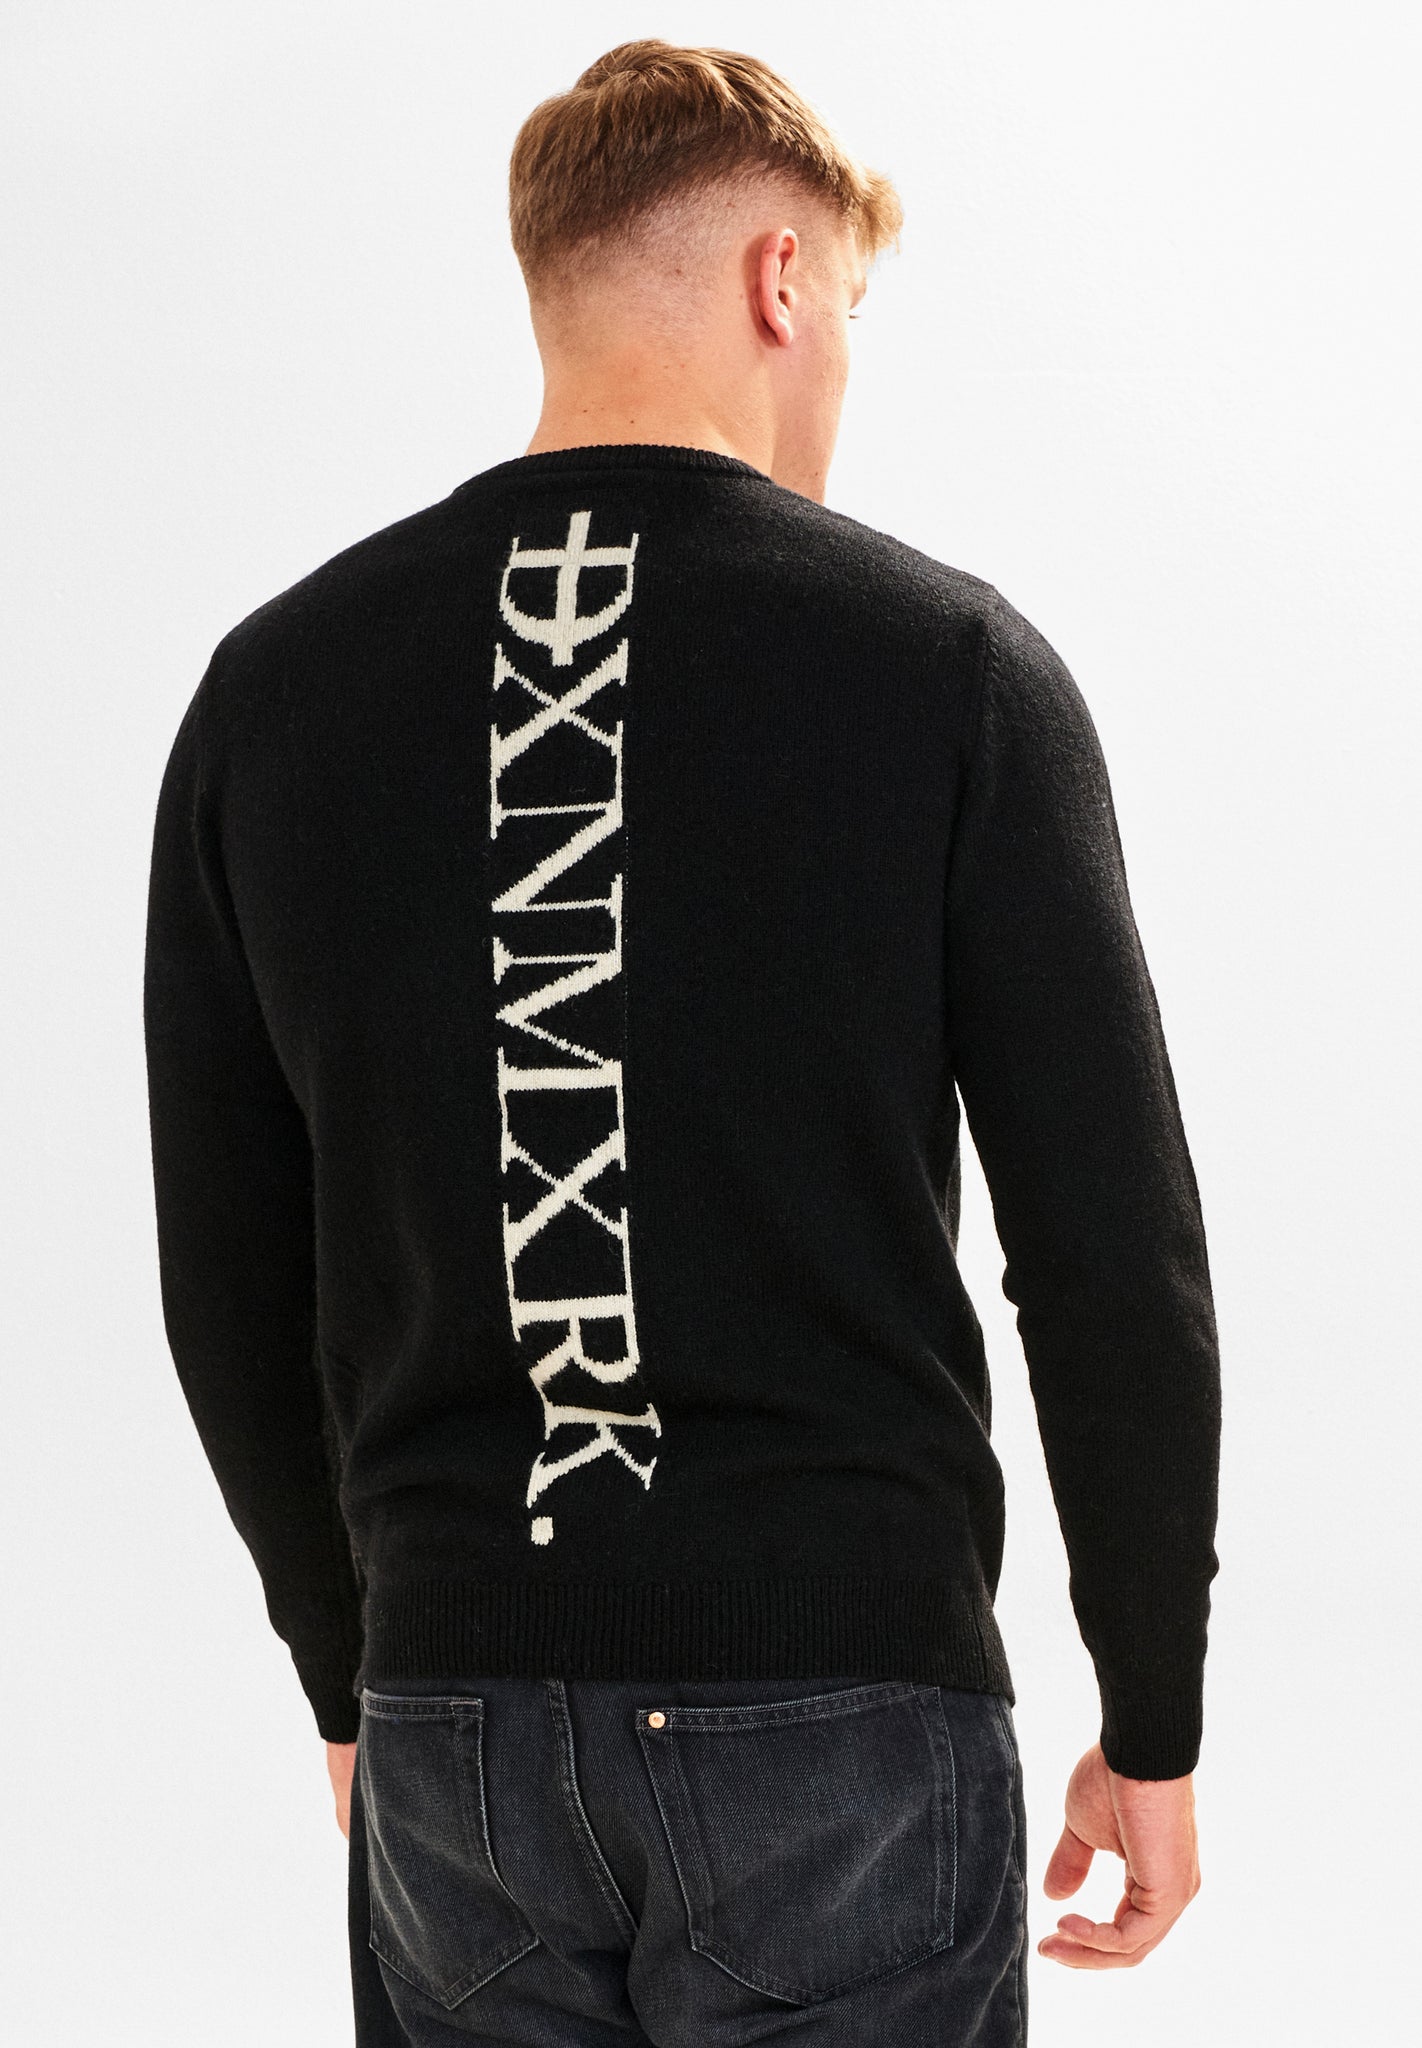 DXNMXRK. DX-Benny Knitwear Meteorite